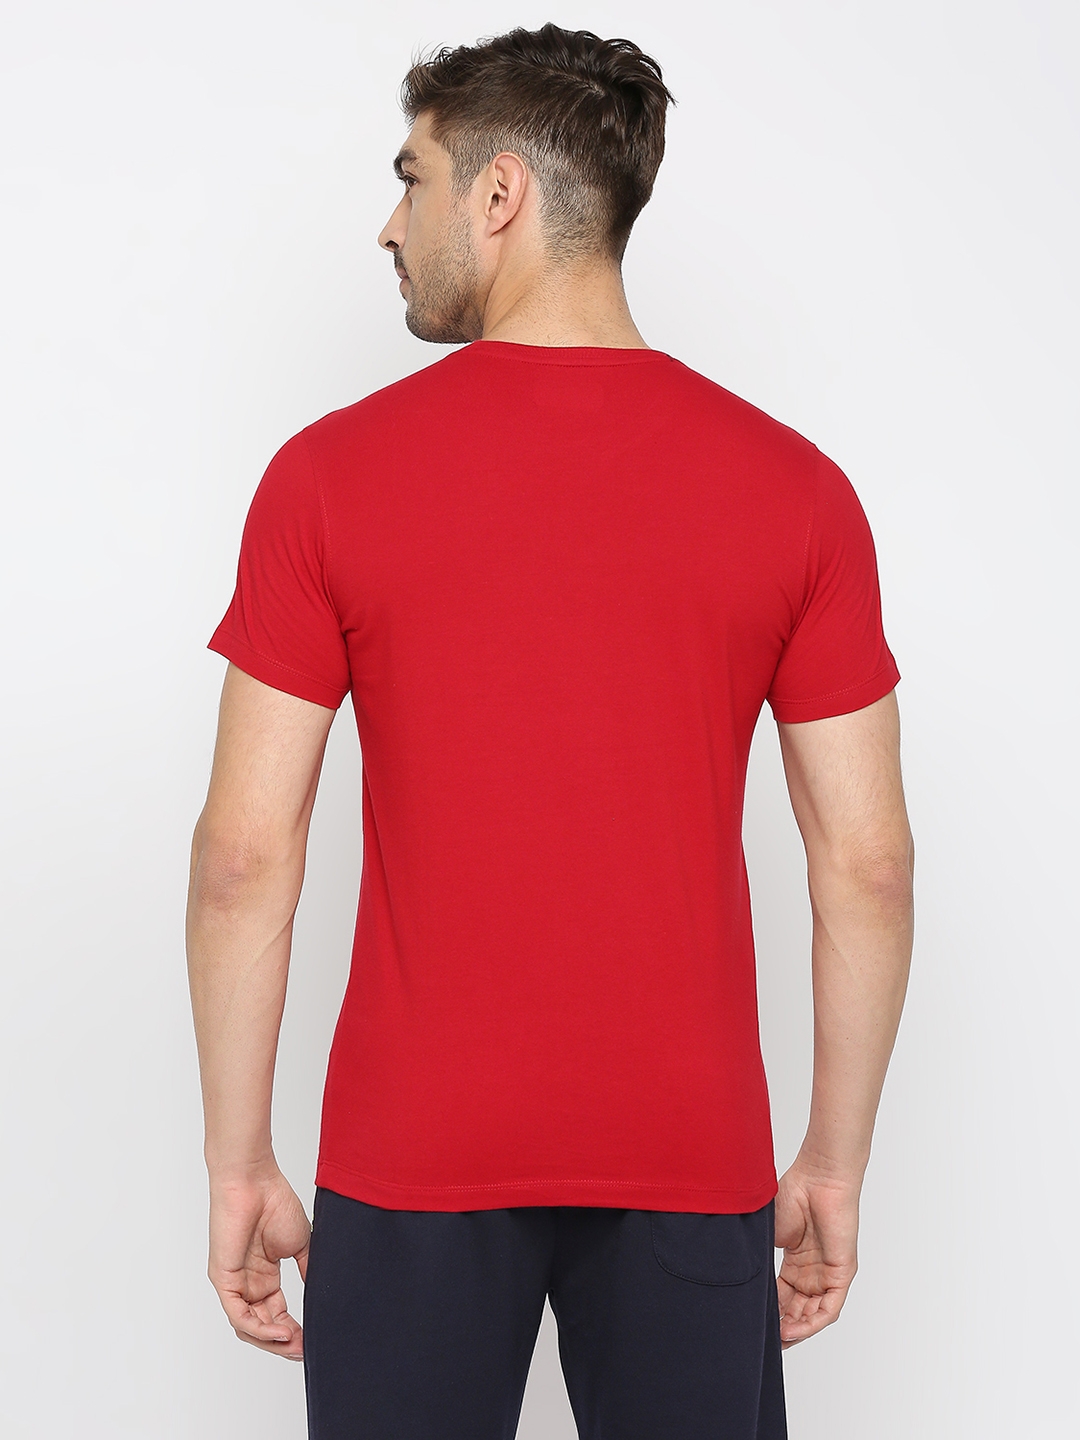 spykar | Underjeans by Spykar Men Deep Red Cotton Round Neck Plain Tshirt 3